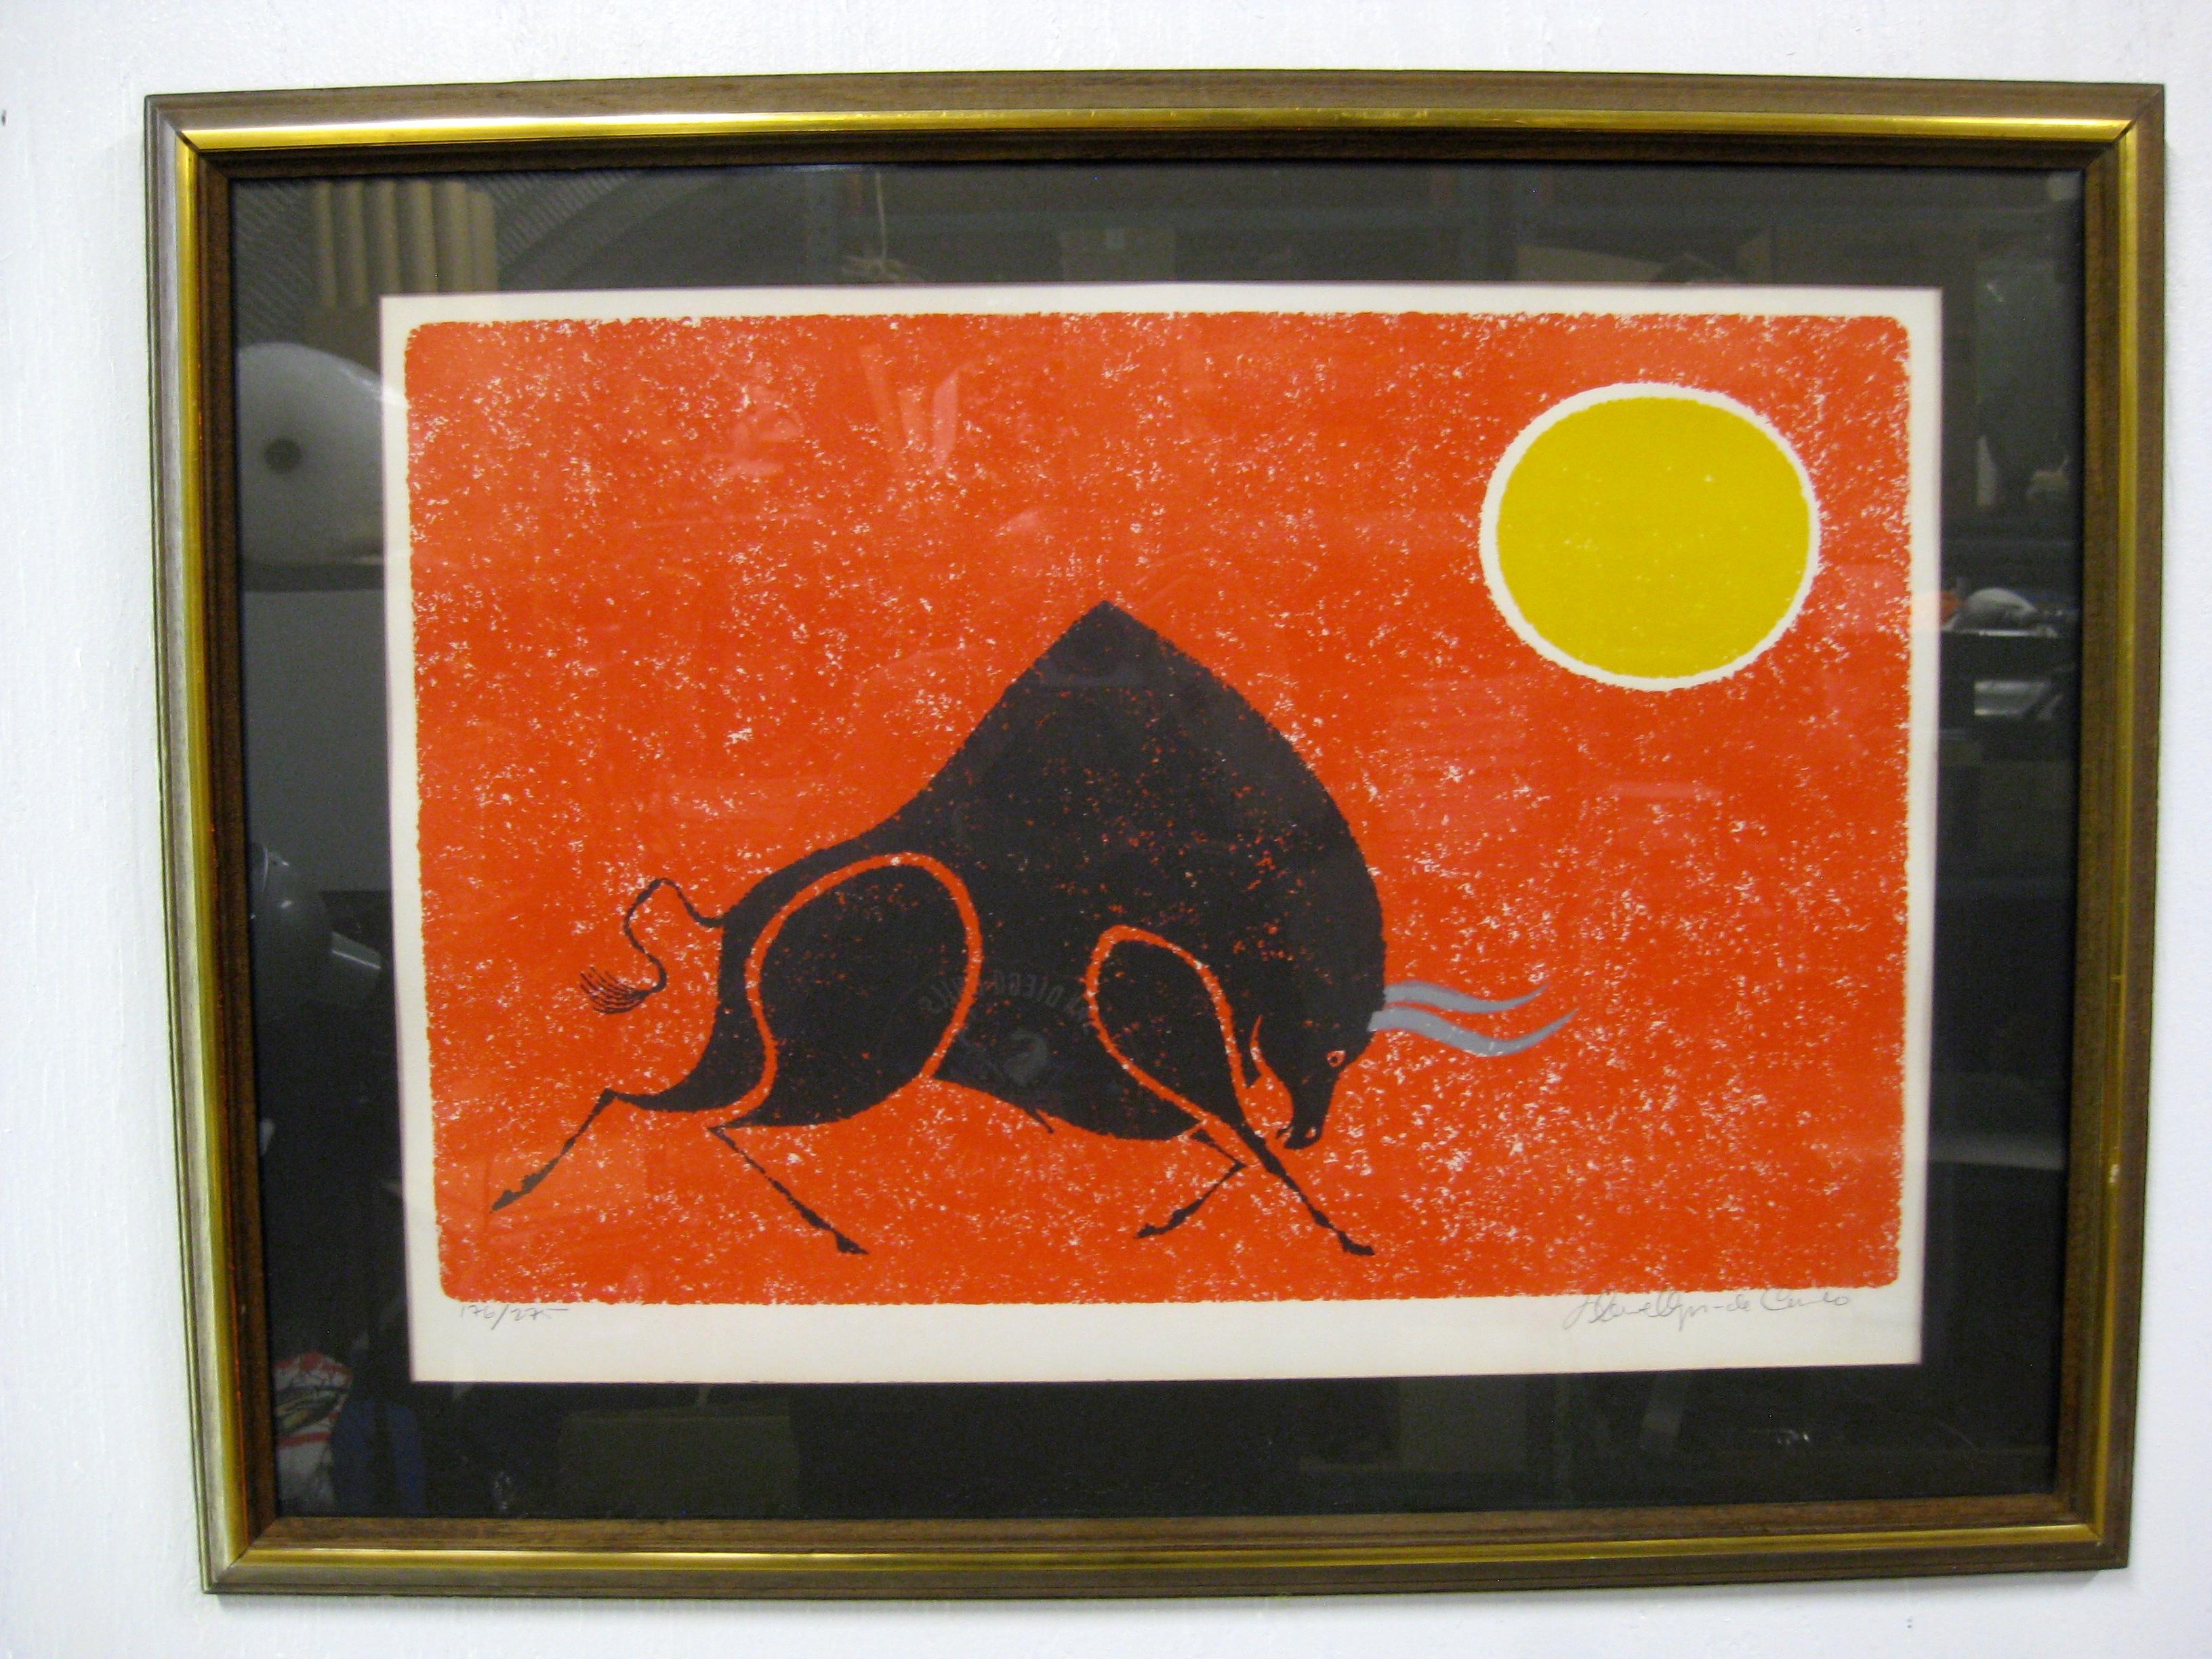 Maravillosa litografía abstracta firmada y numerada a mano por el artista cotizado Keith Llewellyn De Carlo, hacia la década de 1970. La litografía abstracta muestra una colorida figura de un toro y un sol. Colores vibrantes. El arte se vendió a